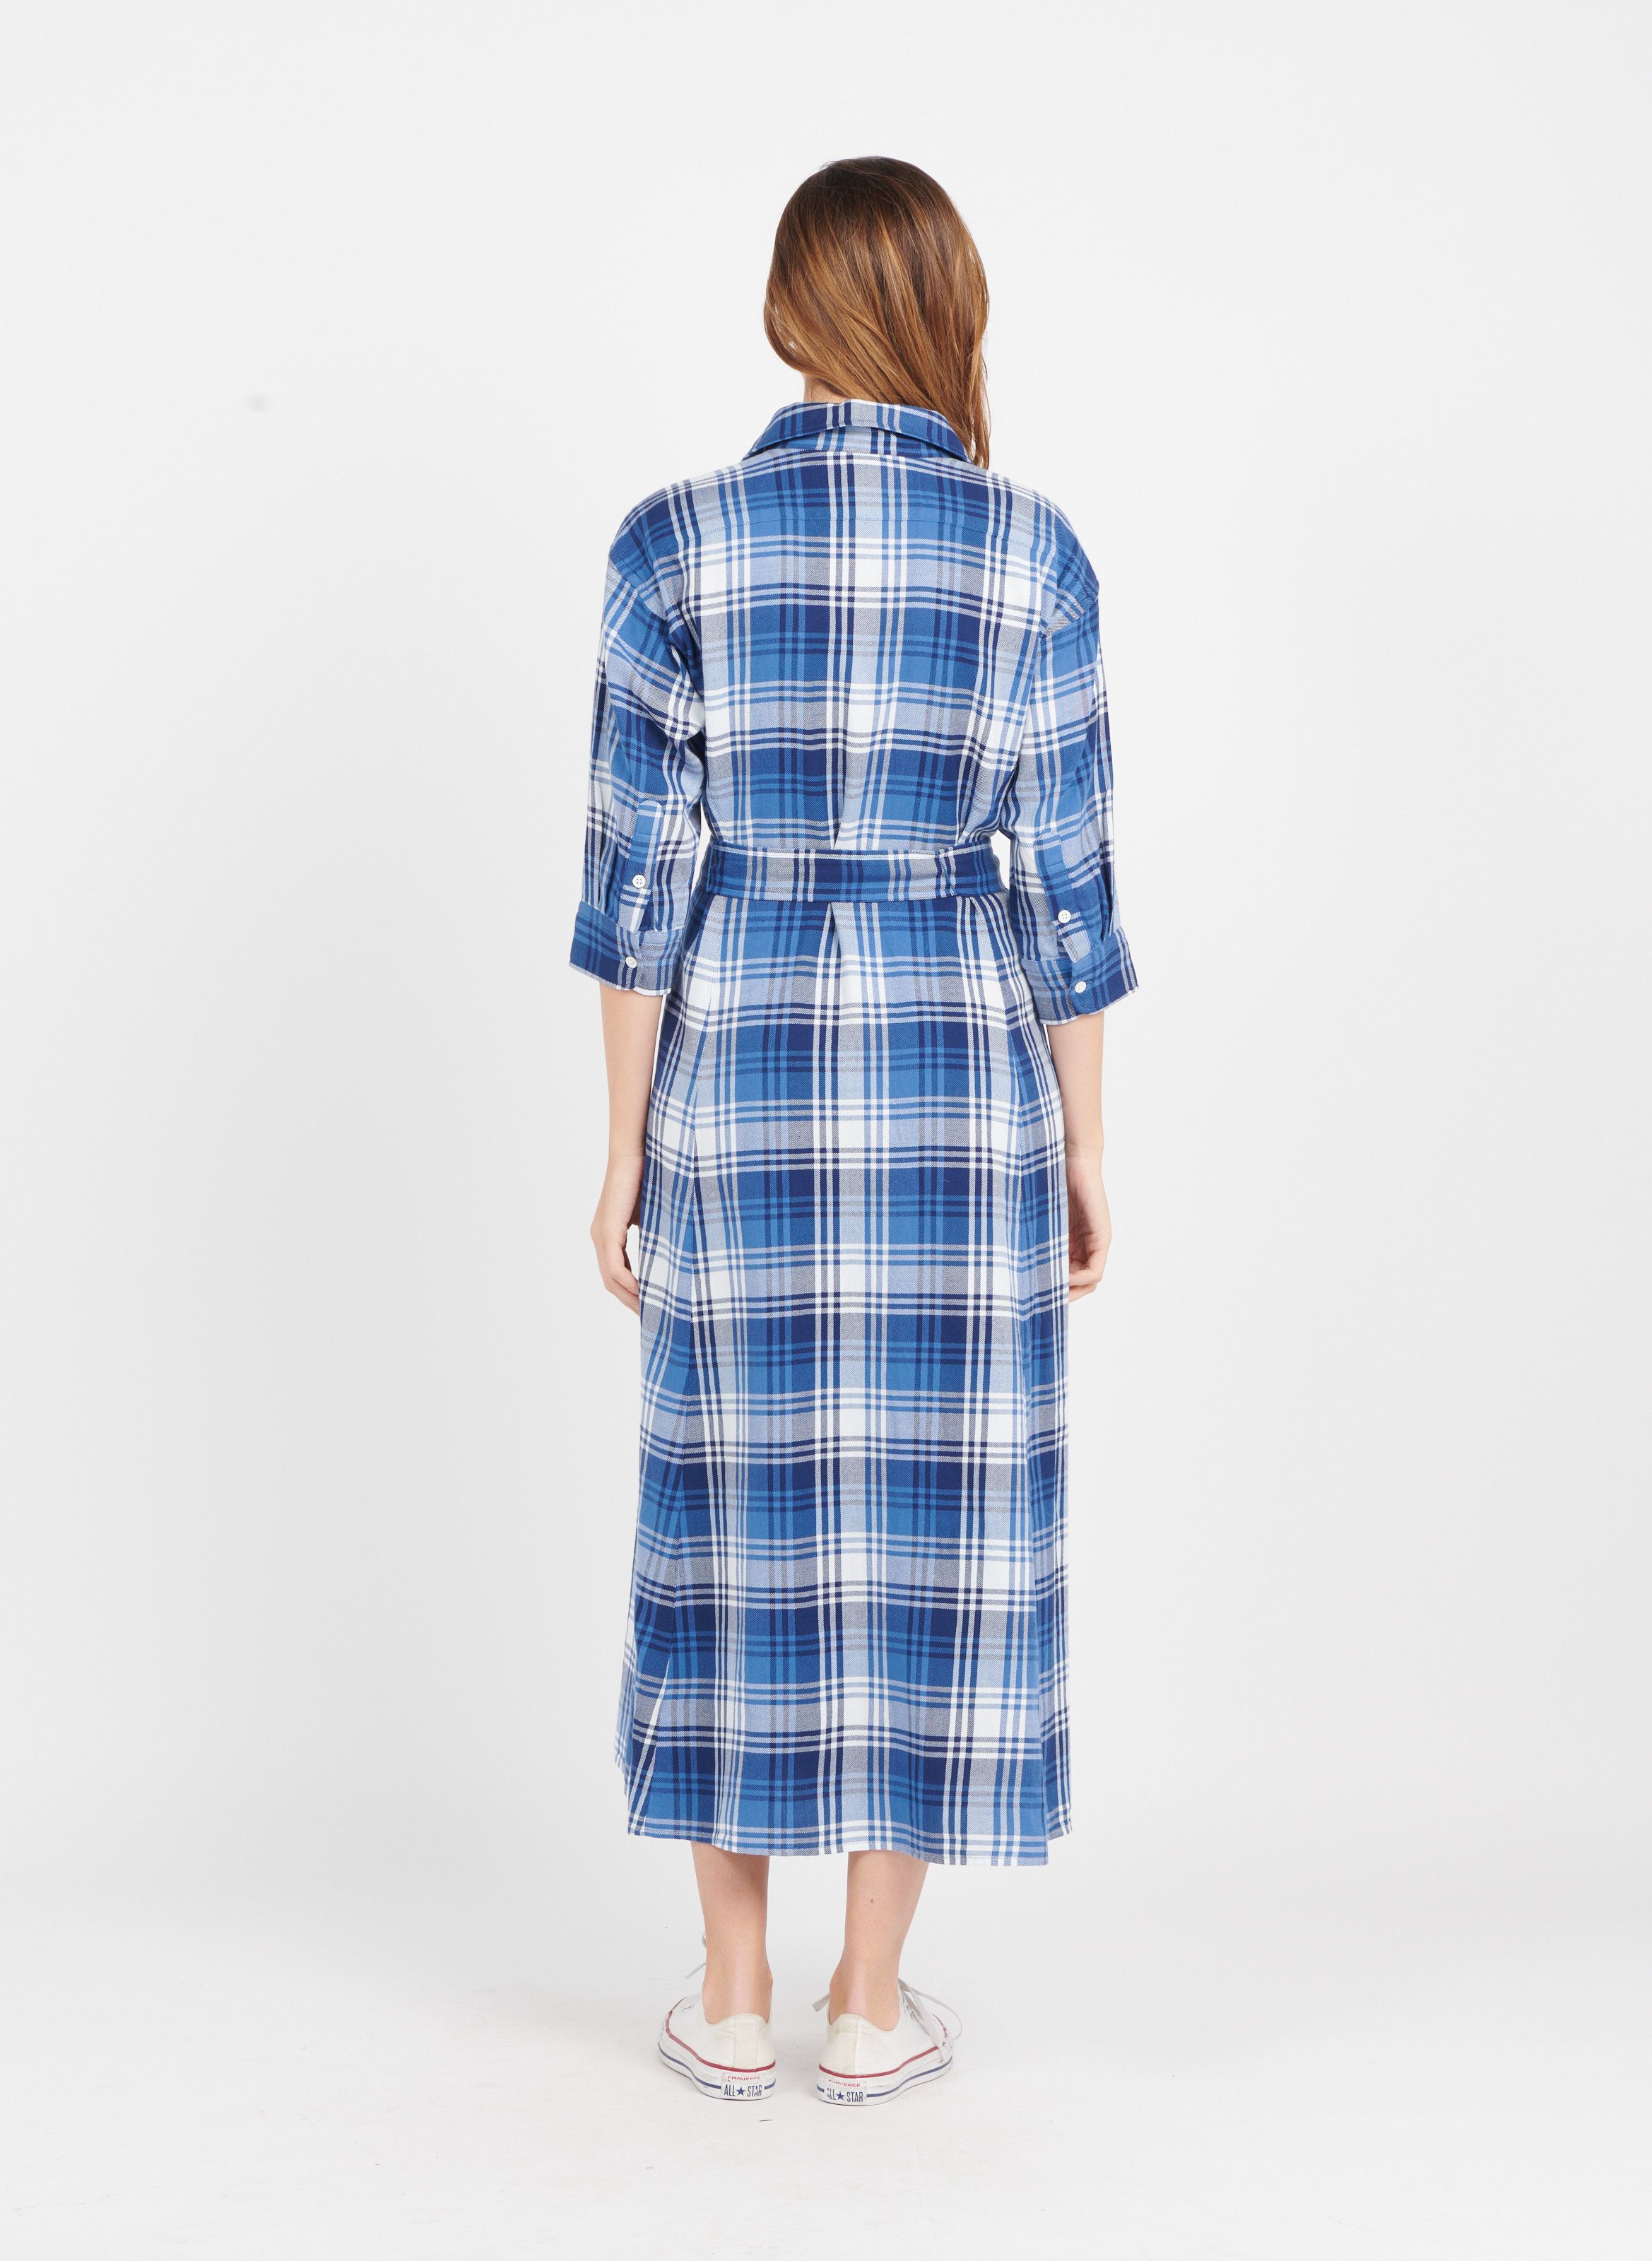 Dresses Polo Ralph Lauren Women: New Collection Online | Place des 